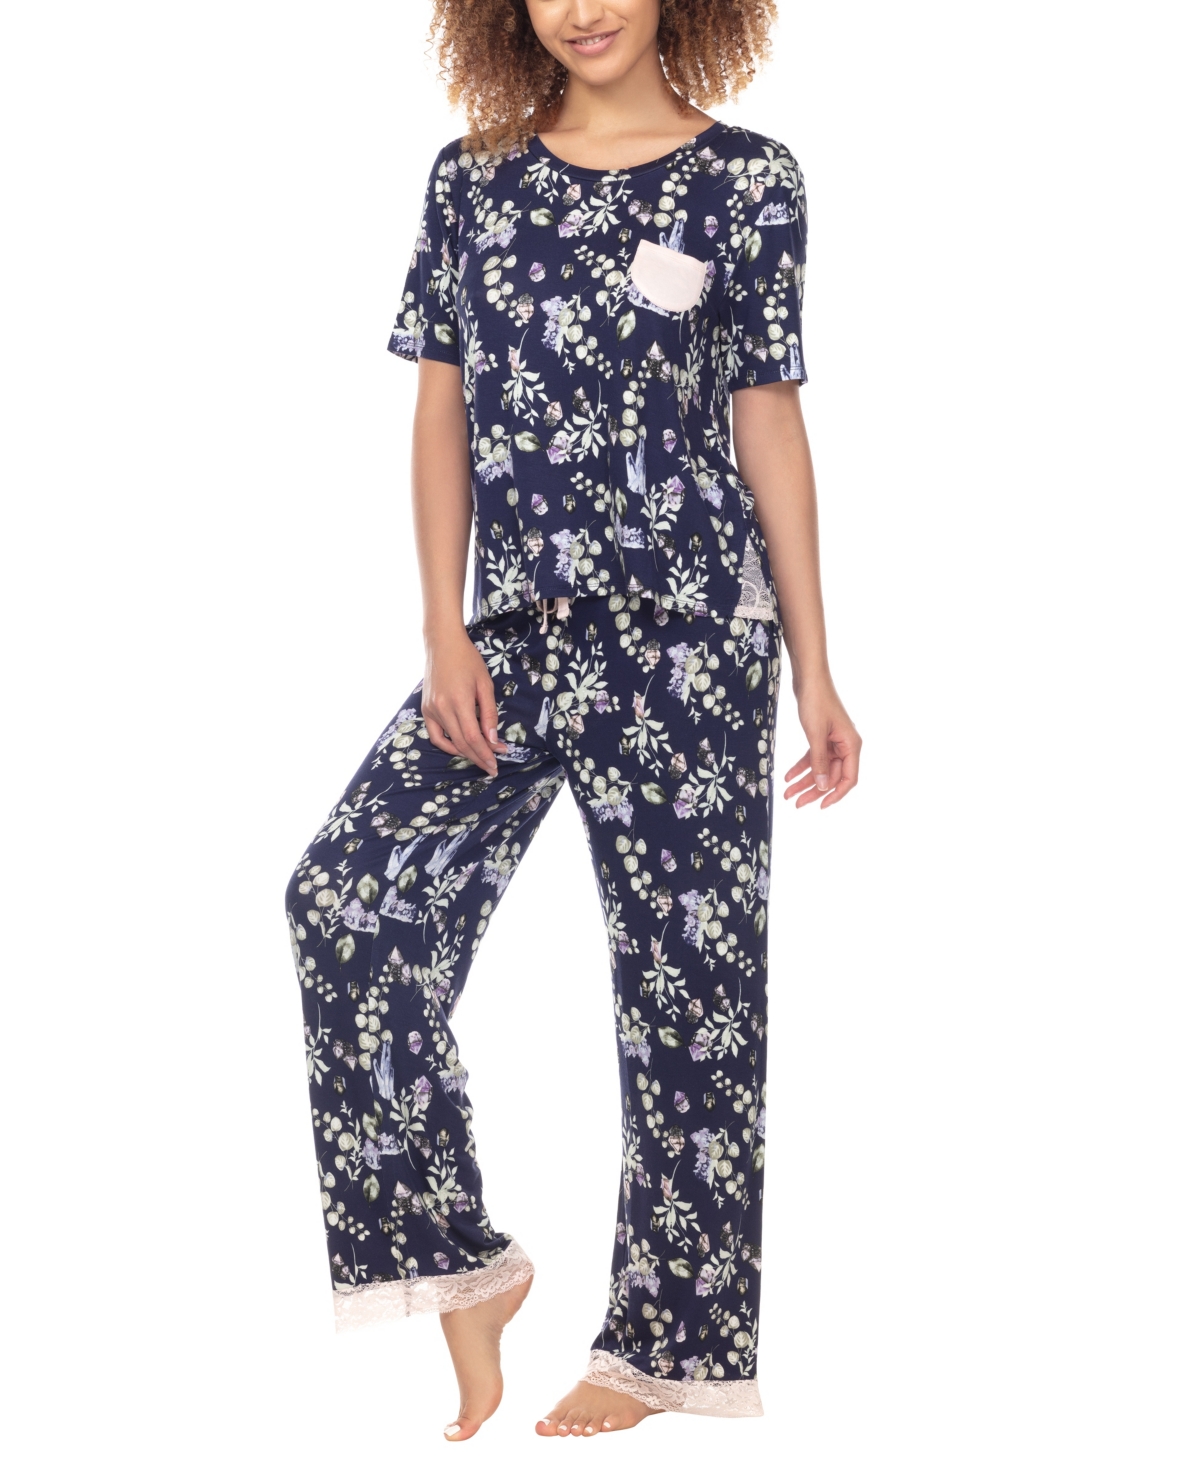 Women's Something Sweet Rayon Pant Pajama Set, 2 Piece - Ink Crystal